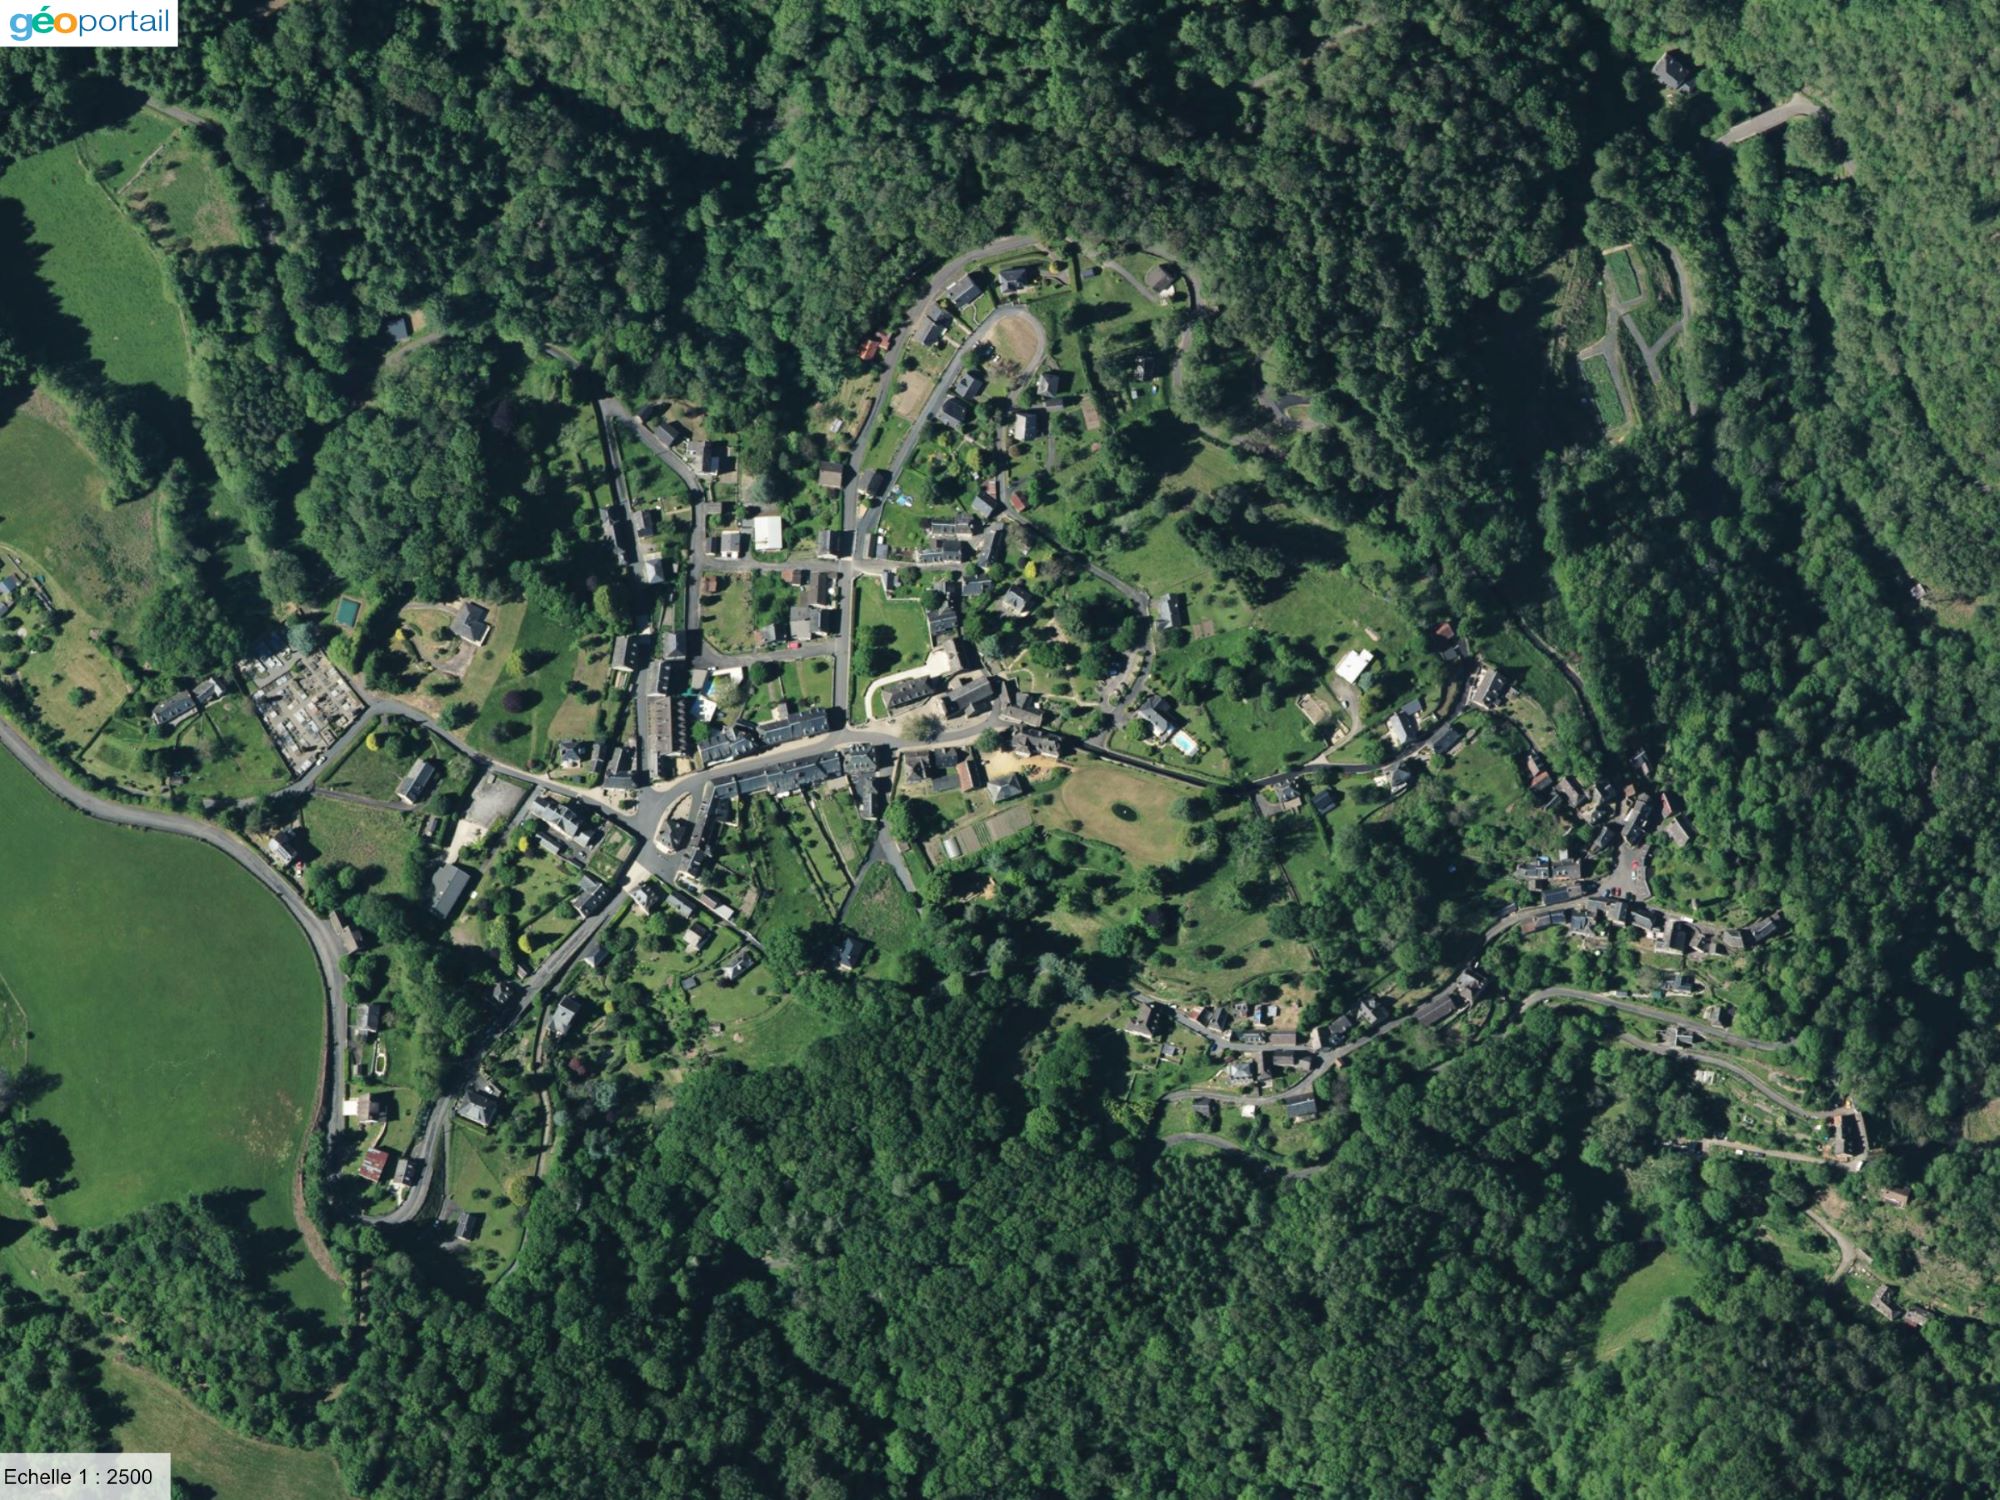 Photo aérienne de la commune de la roche-canillac prise sur le site géoportail